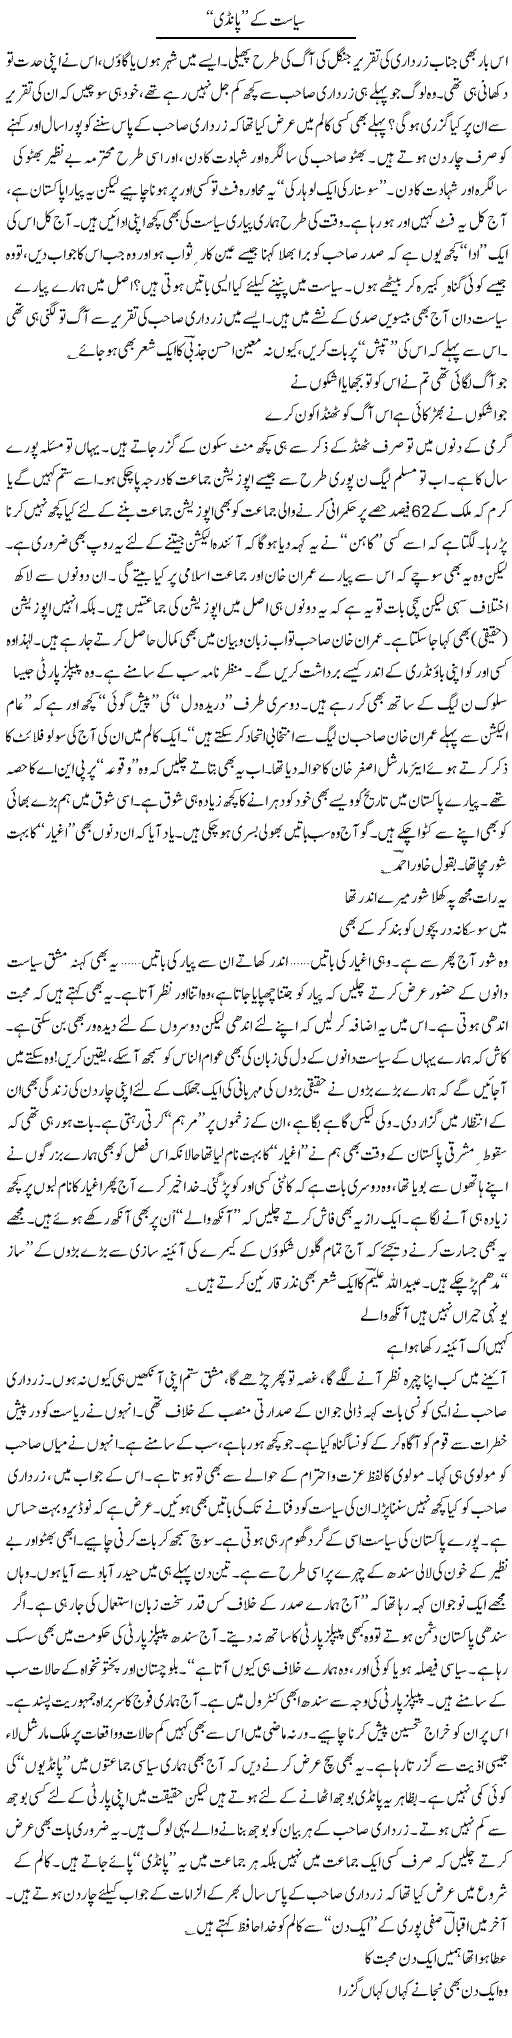 Zardari Speech Express Column Ijaz Abdul Hafeez 28 June 2011